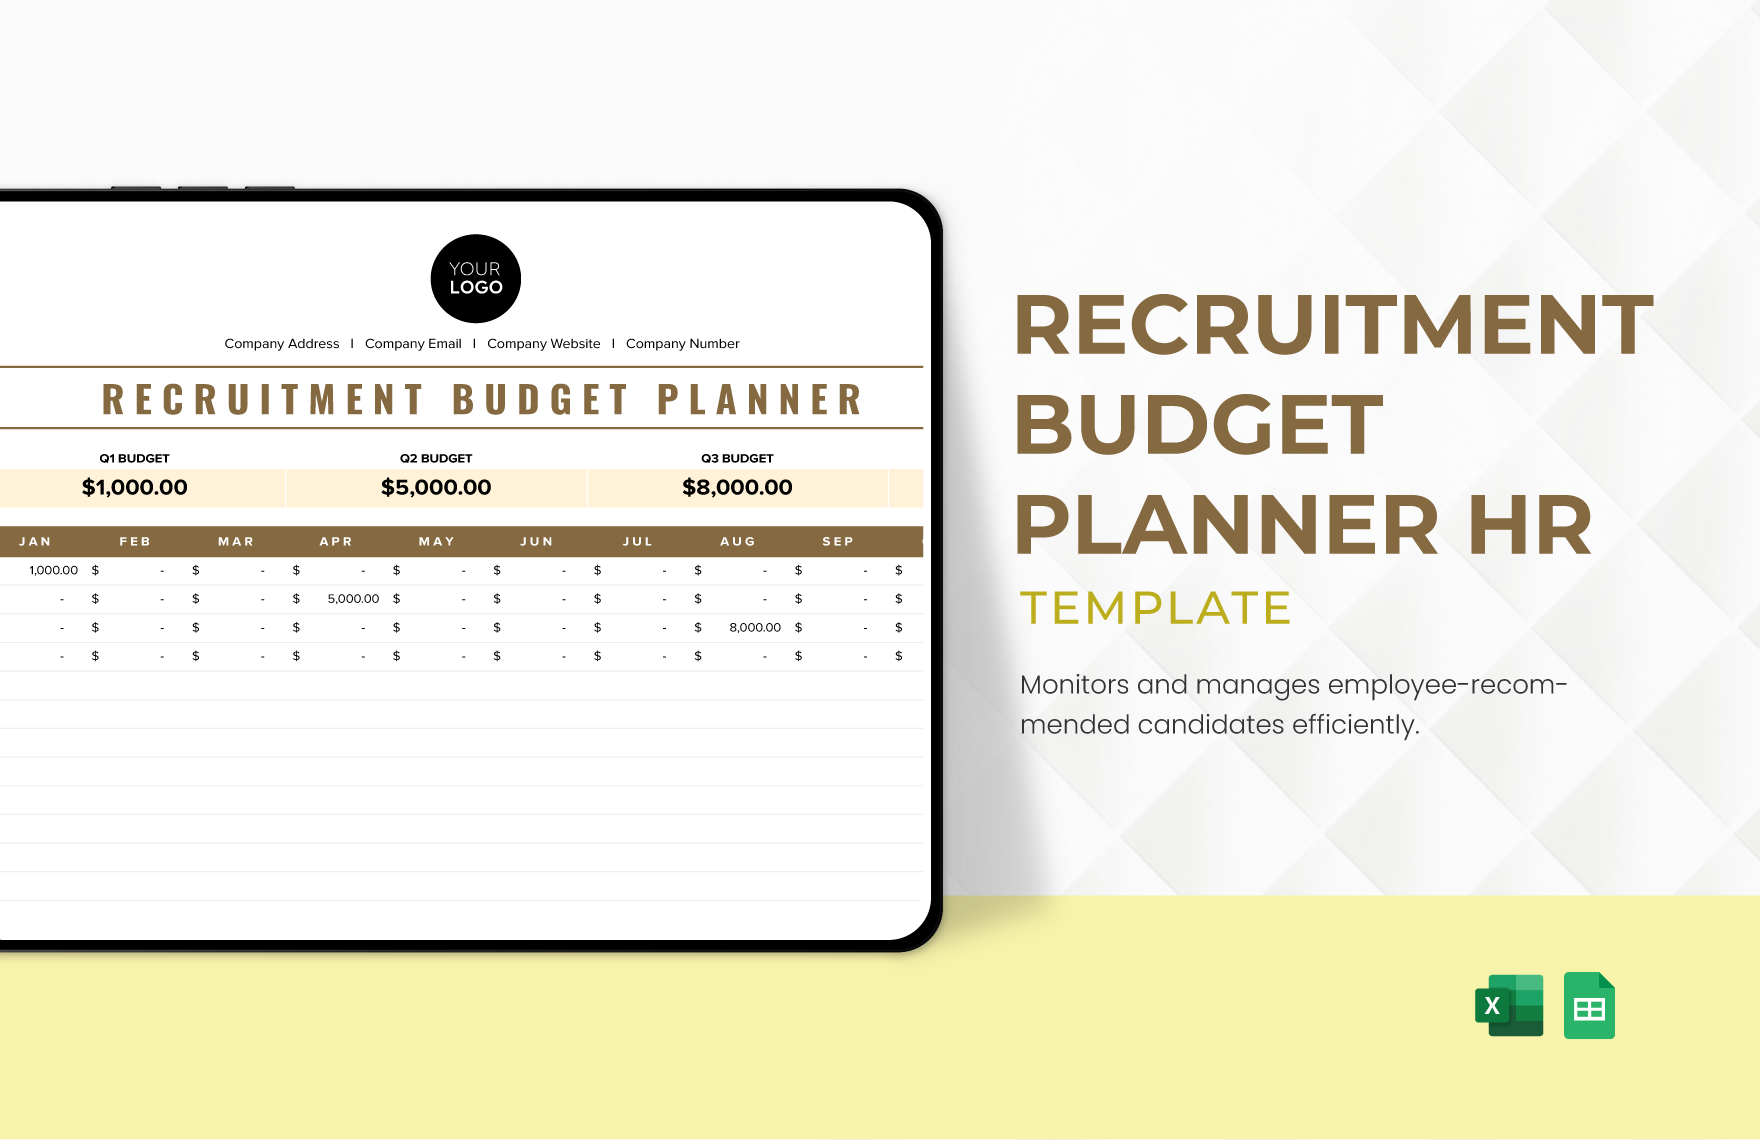 Recruitment Budget Planner HR Template